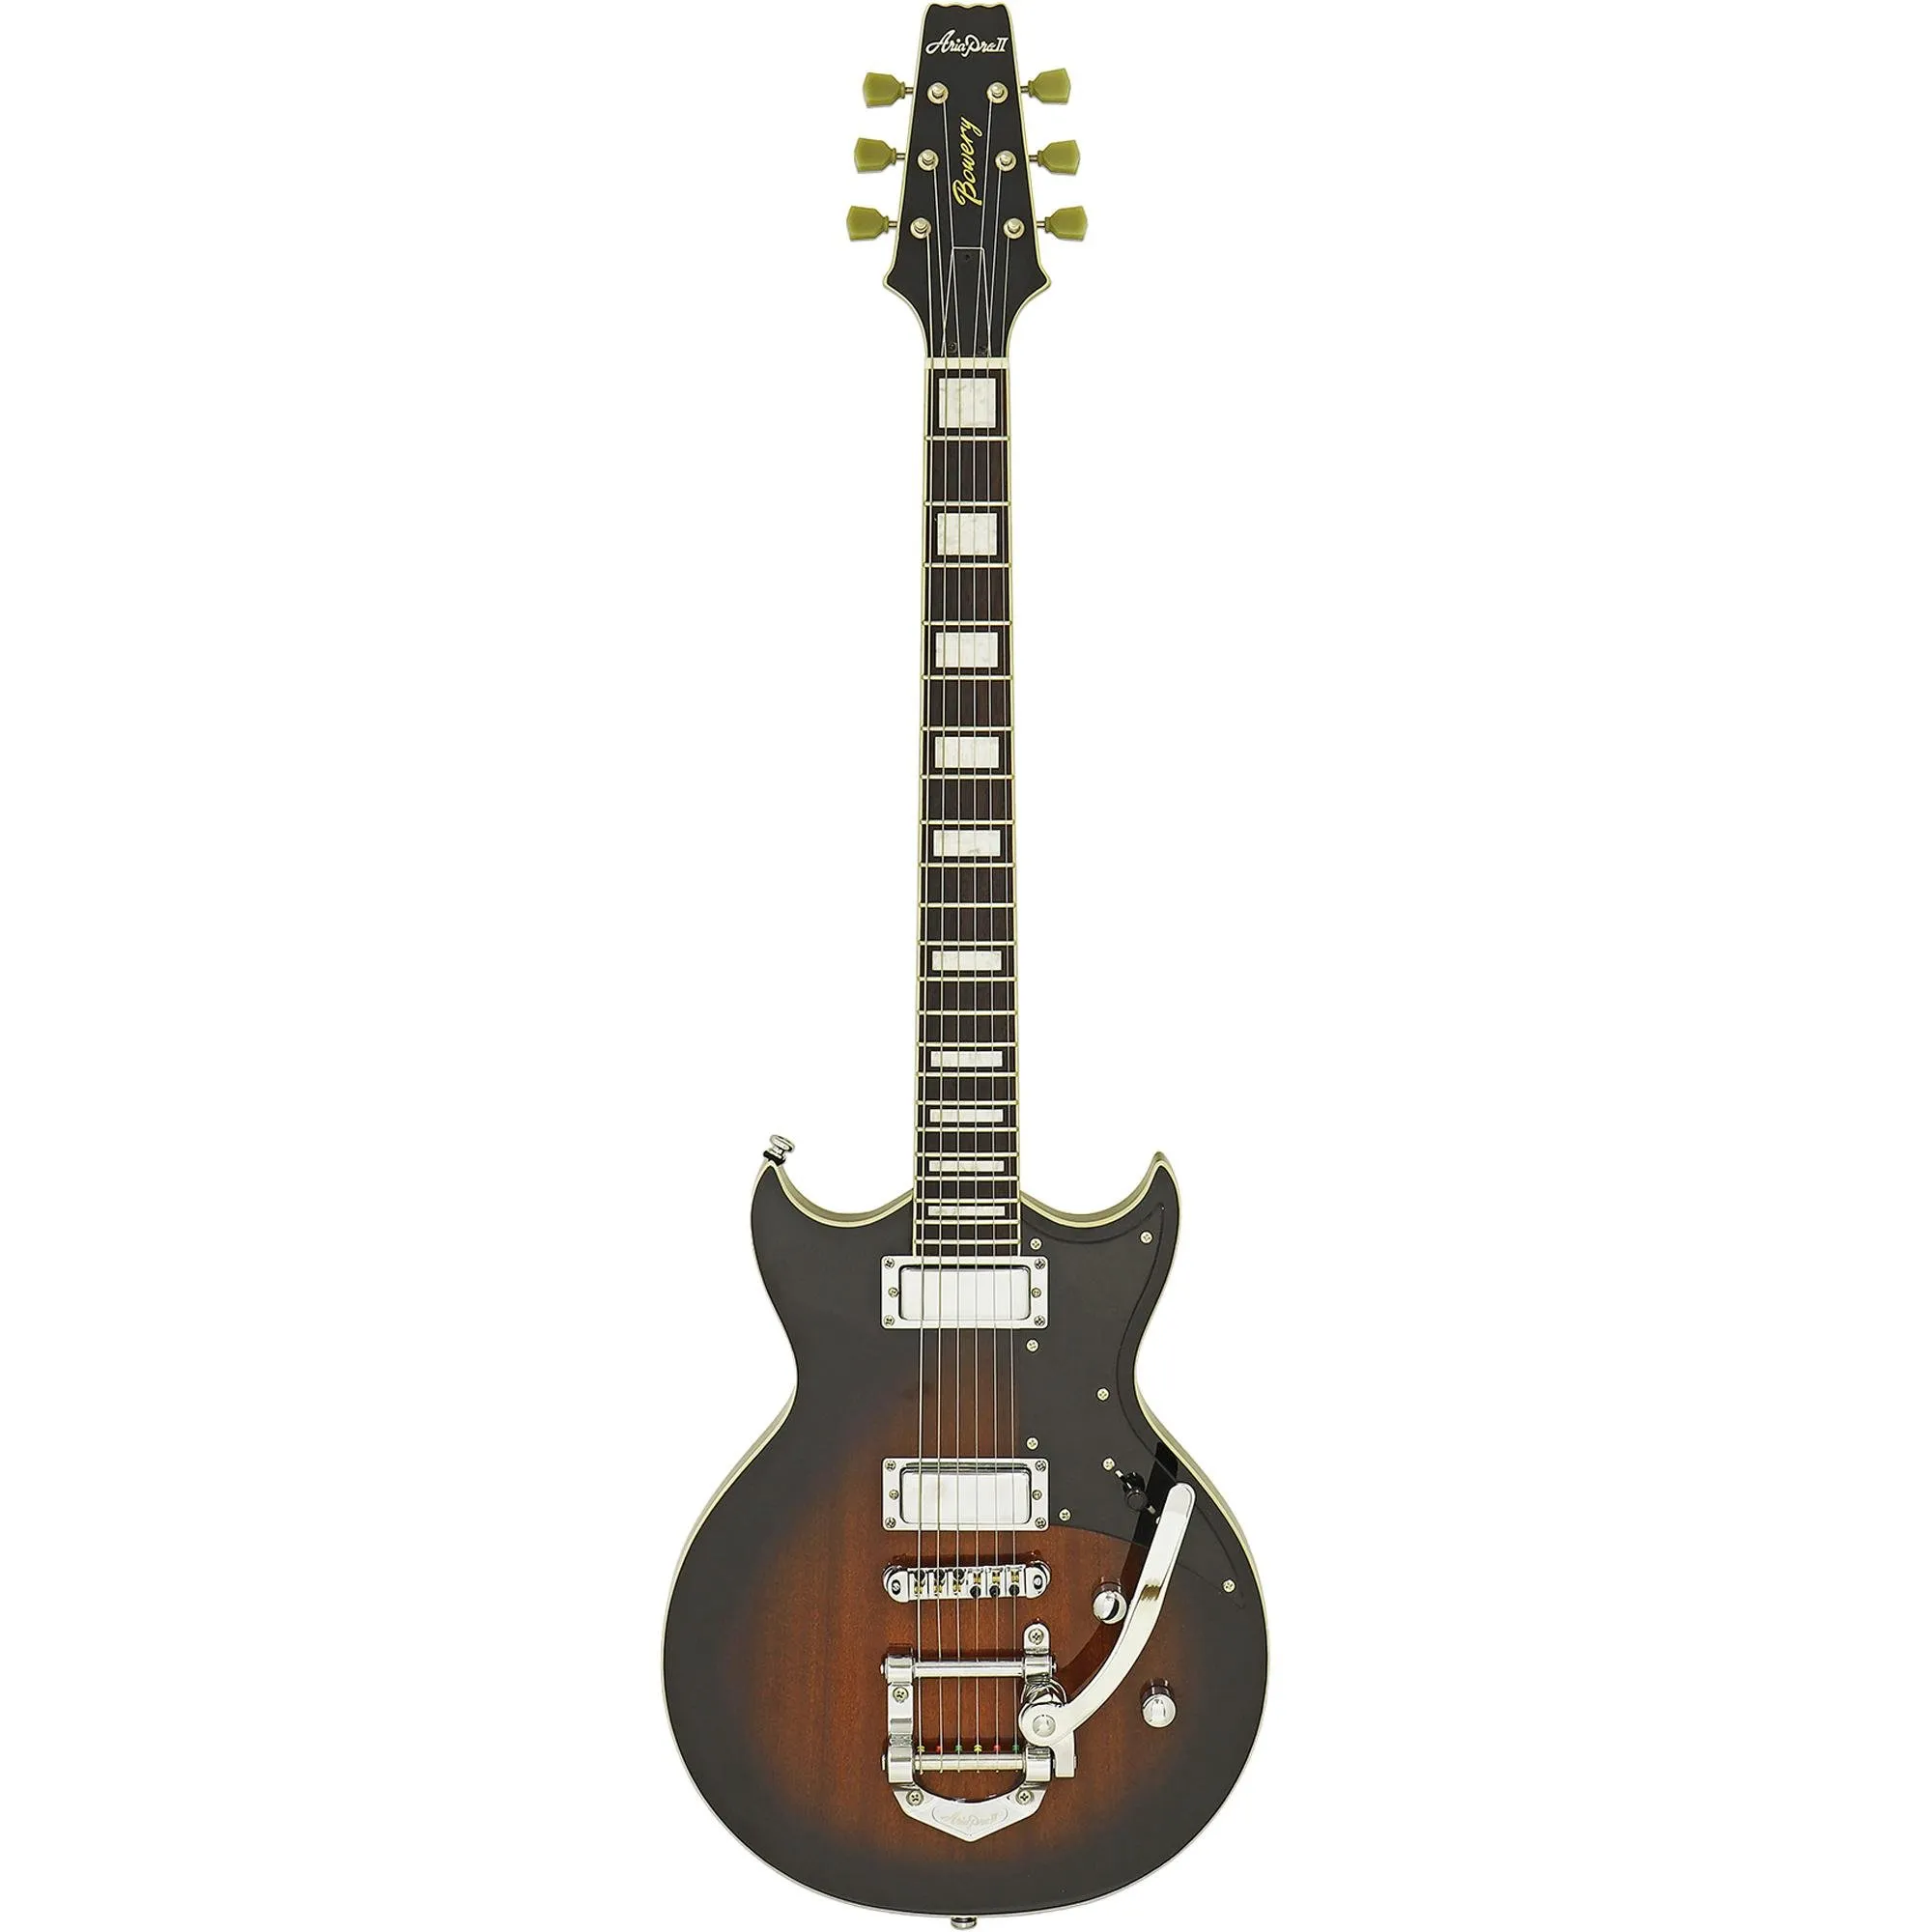 Guitarra Aria Pro II 212-MK2 Bowery Brown Sunburst por 5.053,66 à vista no boleto/pix ou parcele em até 12x sem juros. Compre na loja Aria!